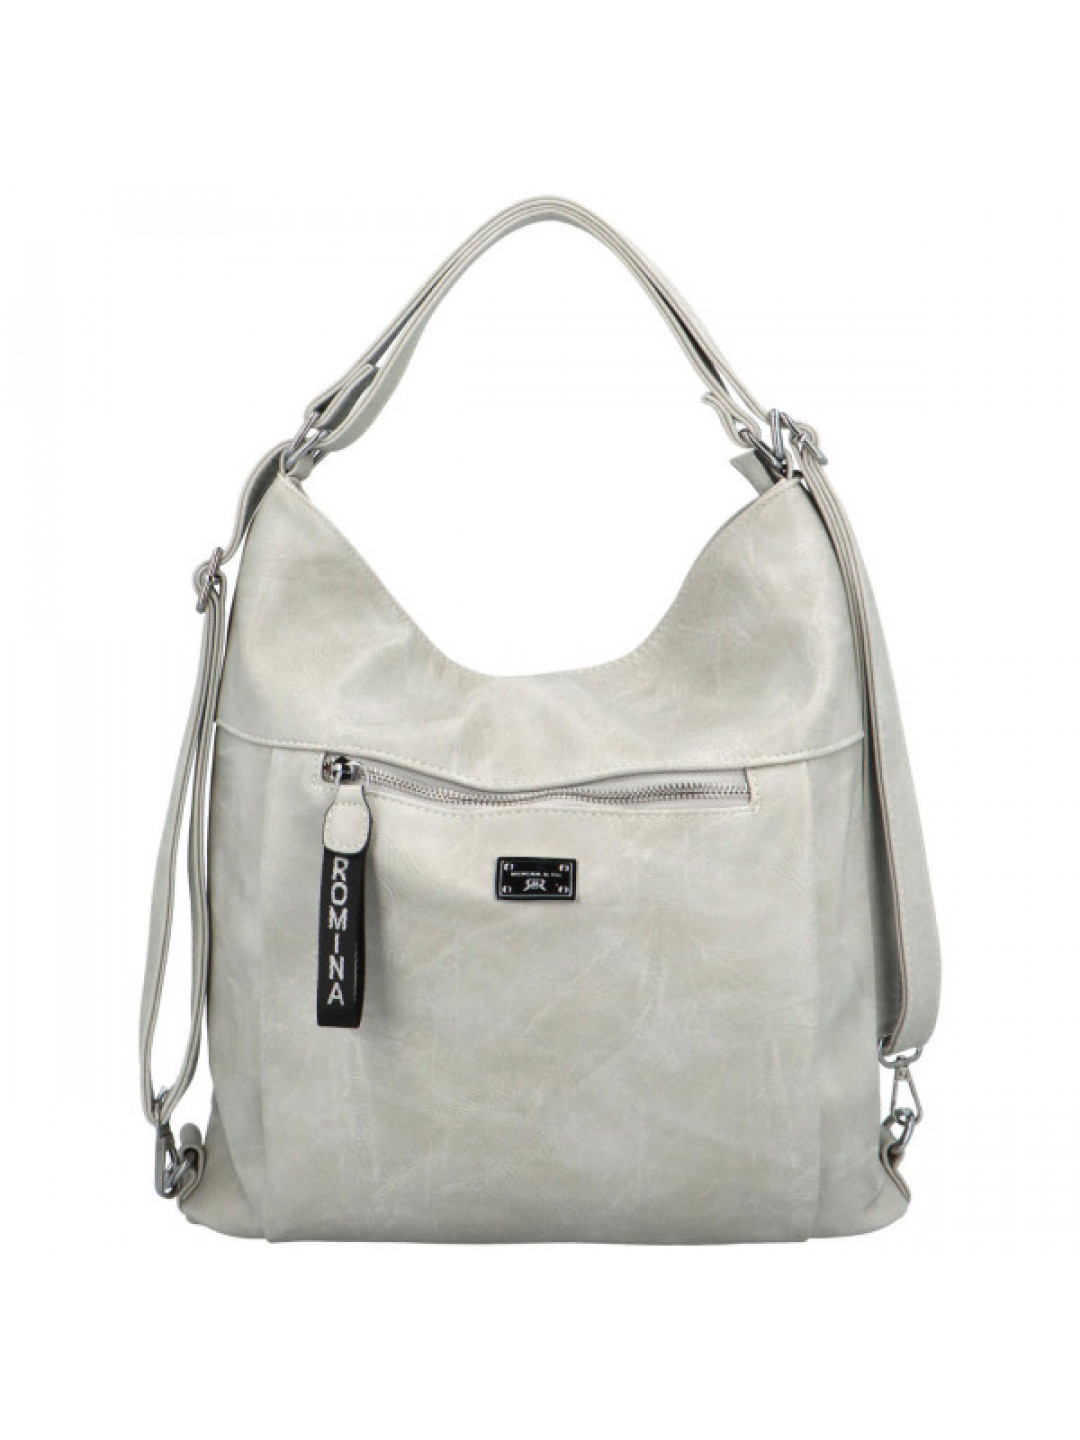 Stylový dámský koženkový kabelko-batoh Stafania šedy